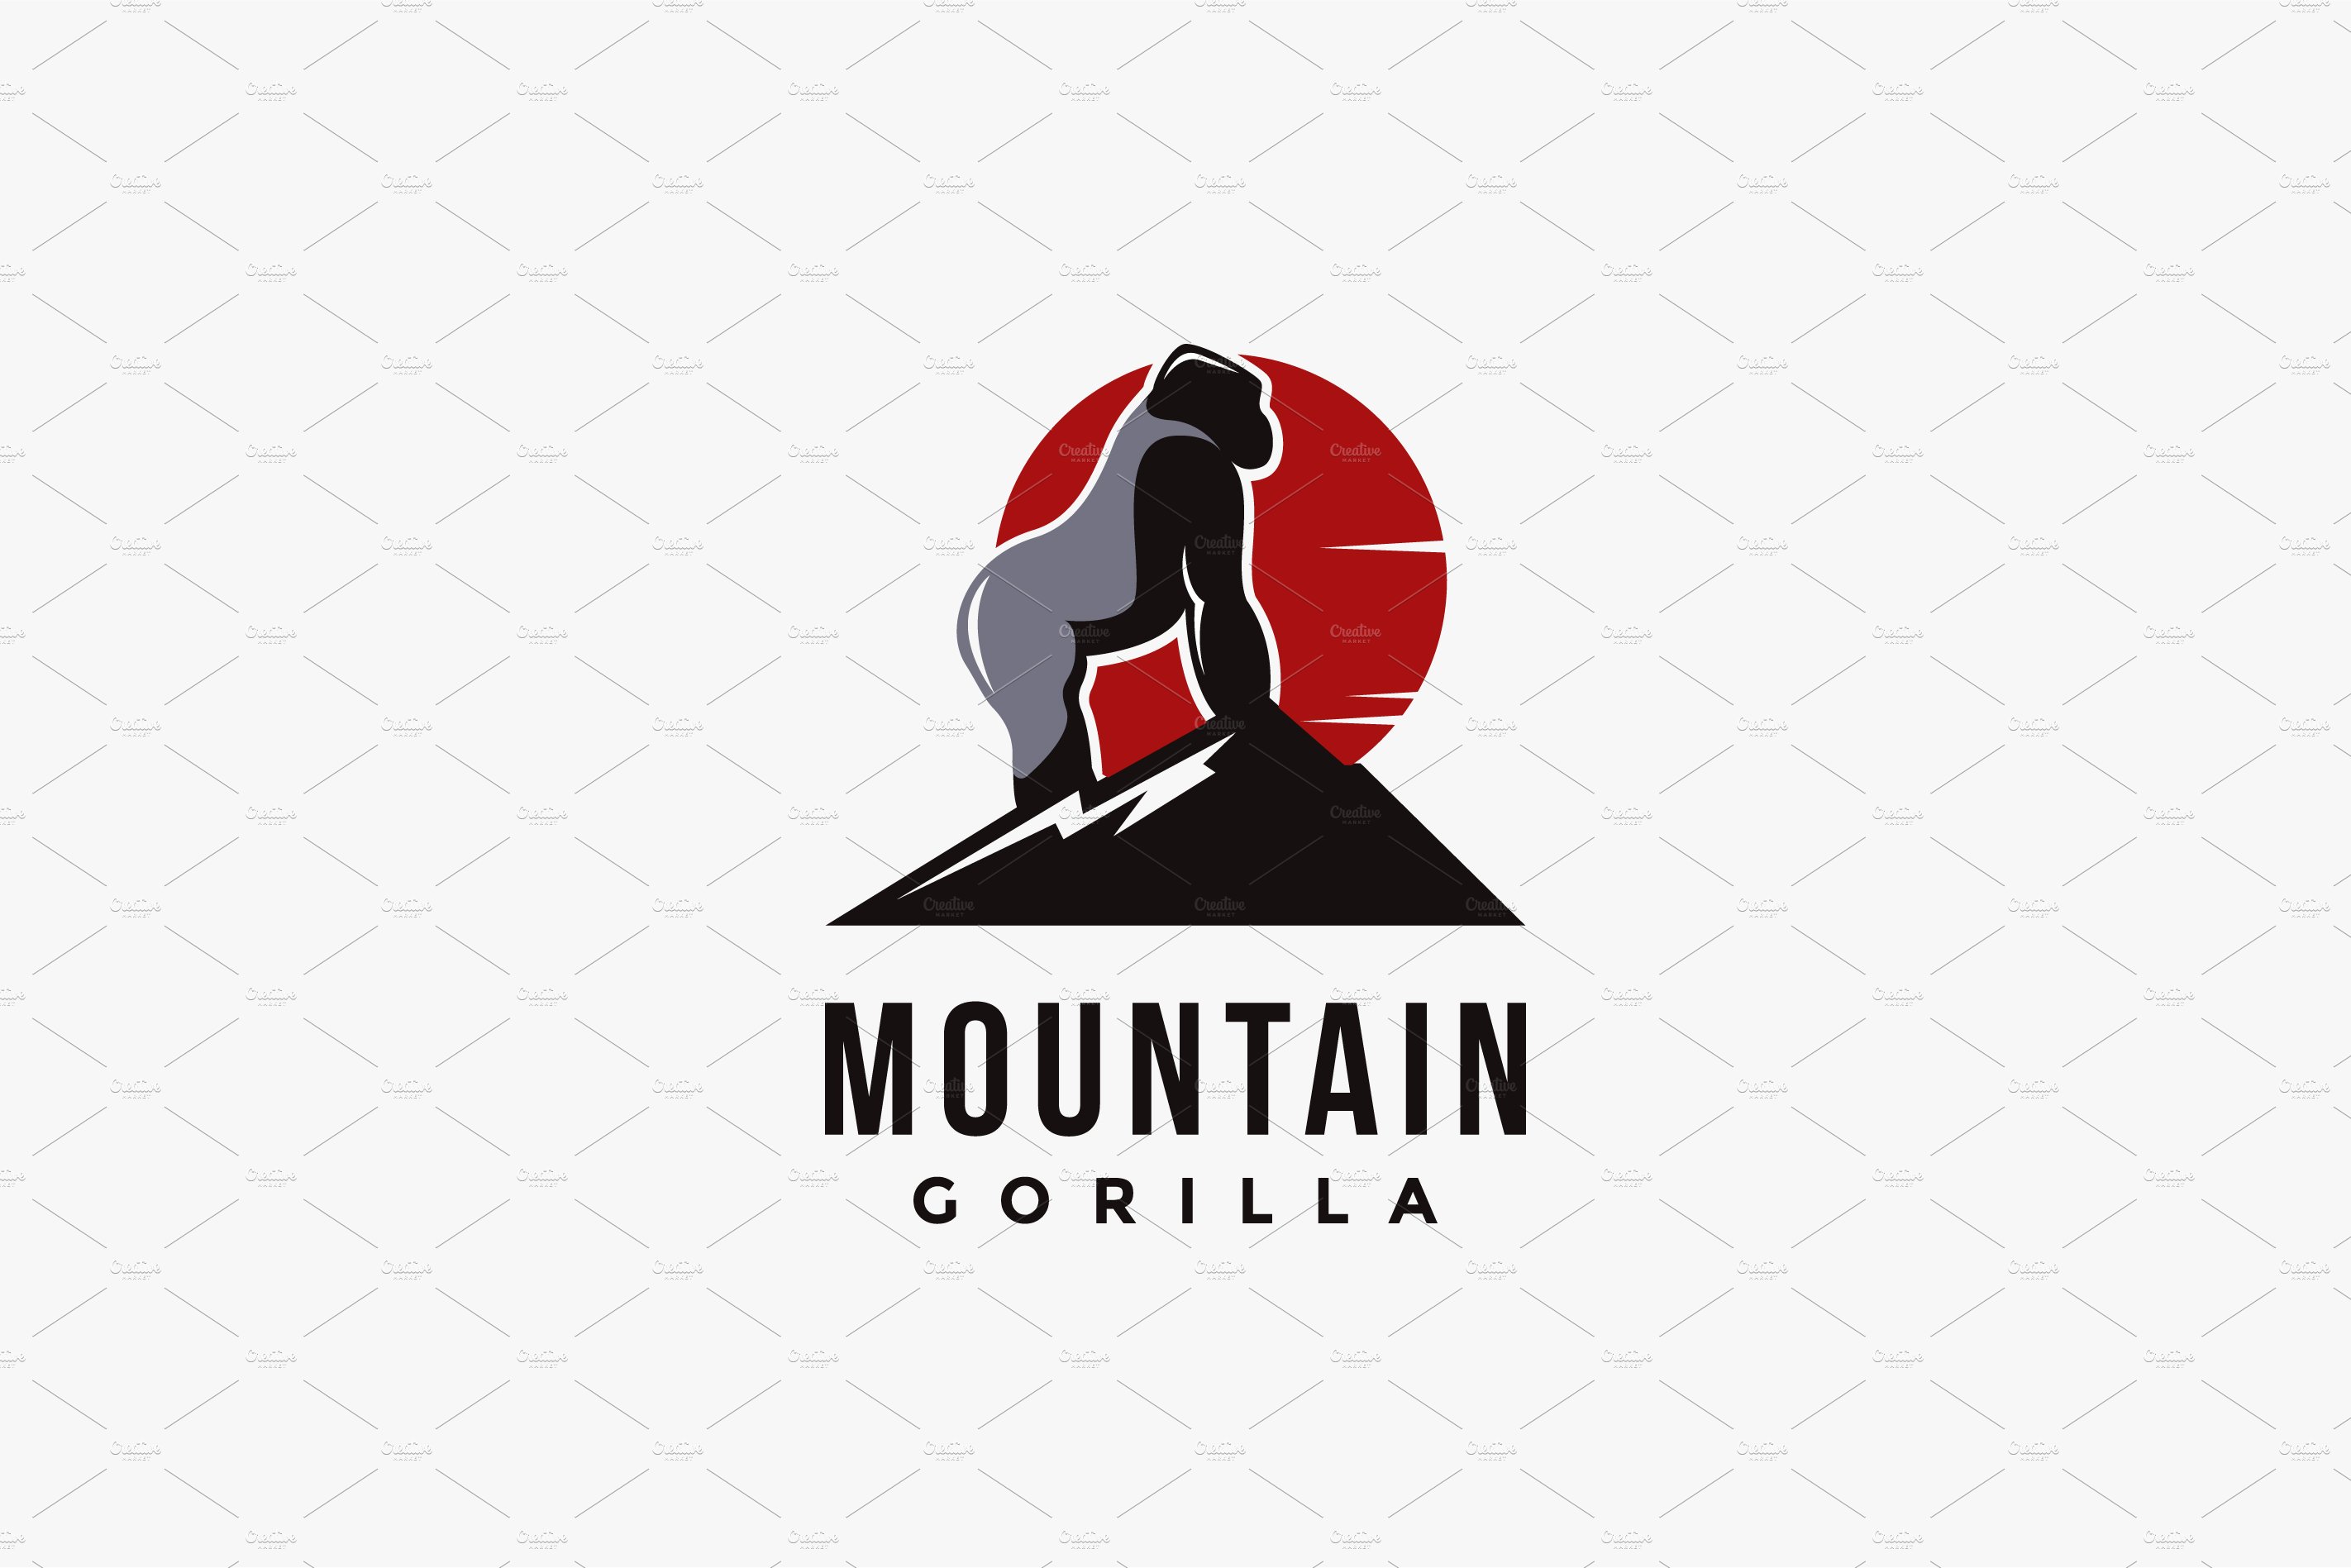 Mountain and gorilla logo vector cover image.